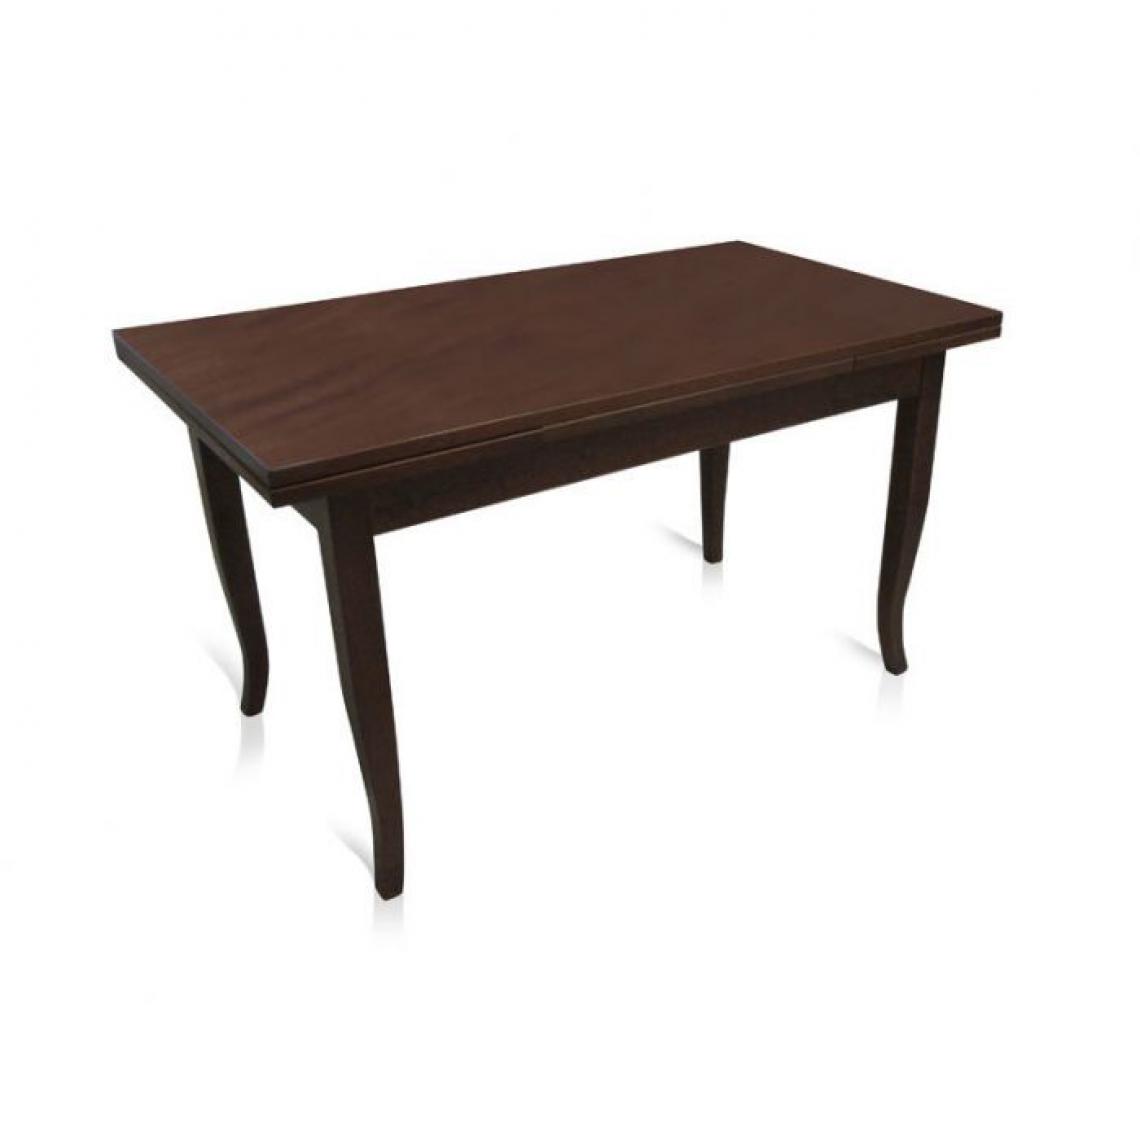 Alter - Table extensible, coloris noyer, 160x85x79,50 cm, avec 2 rallonges de 40 cm - Tables à manger